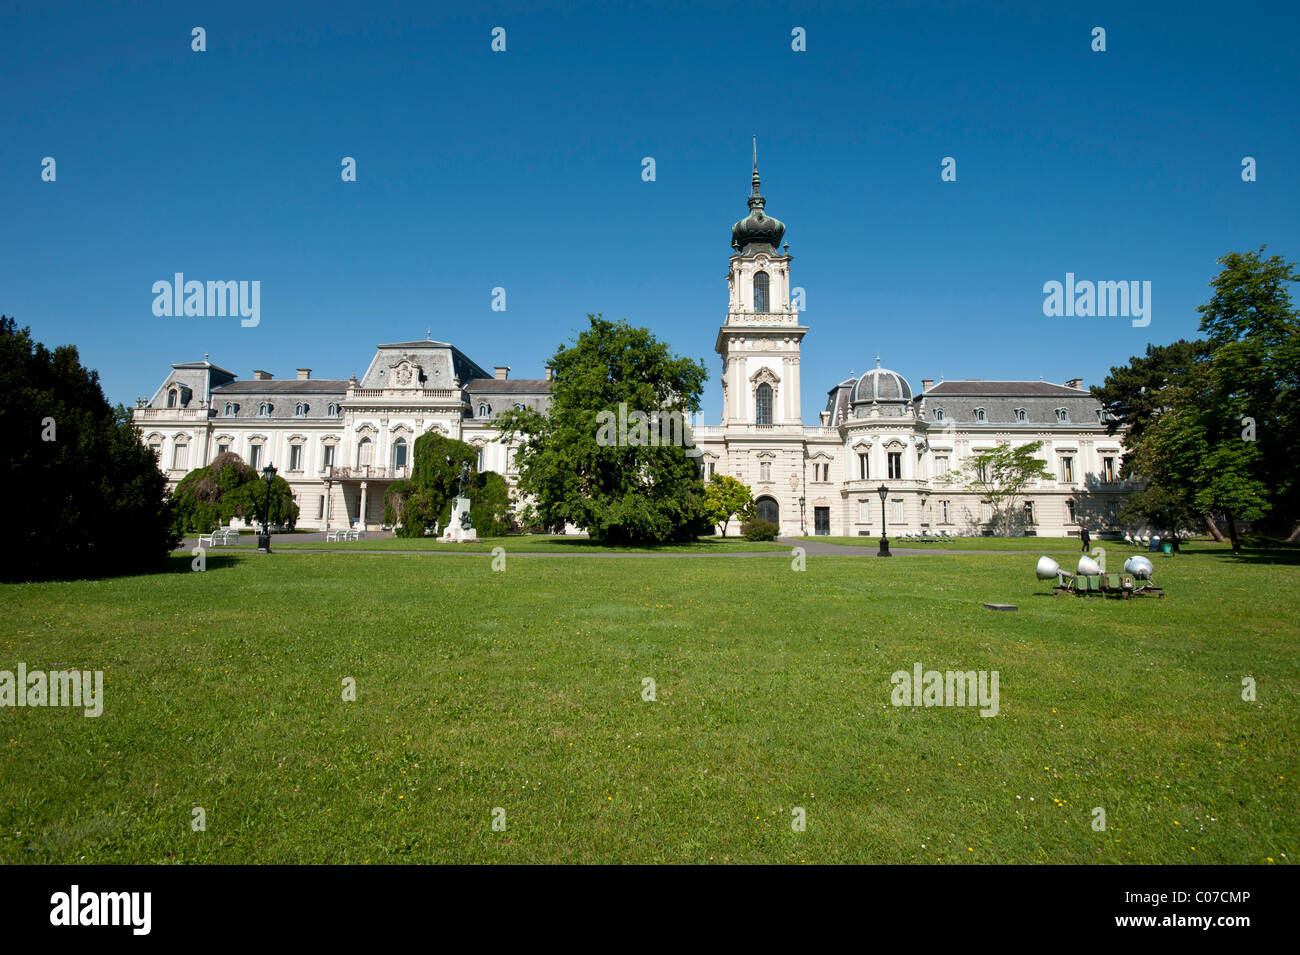 Baroque castle, Festetics kasteely, Keszthely, Hungary, Europe Stock Photo